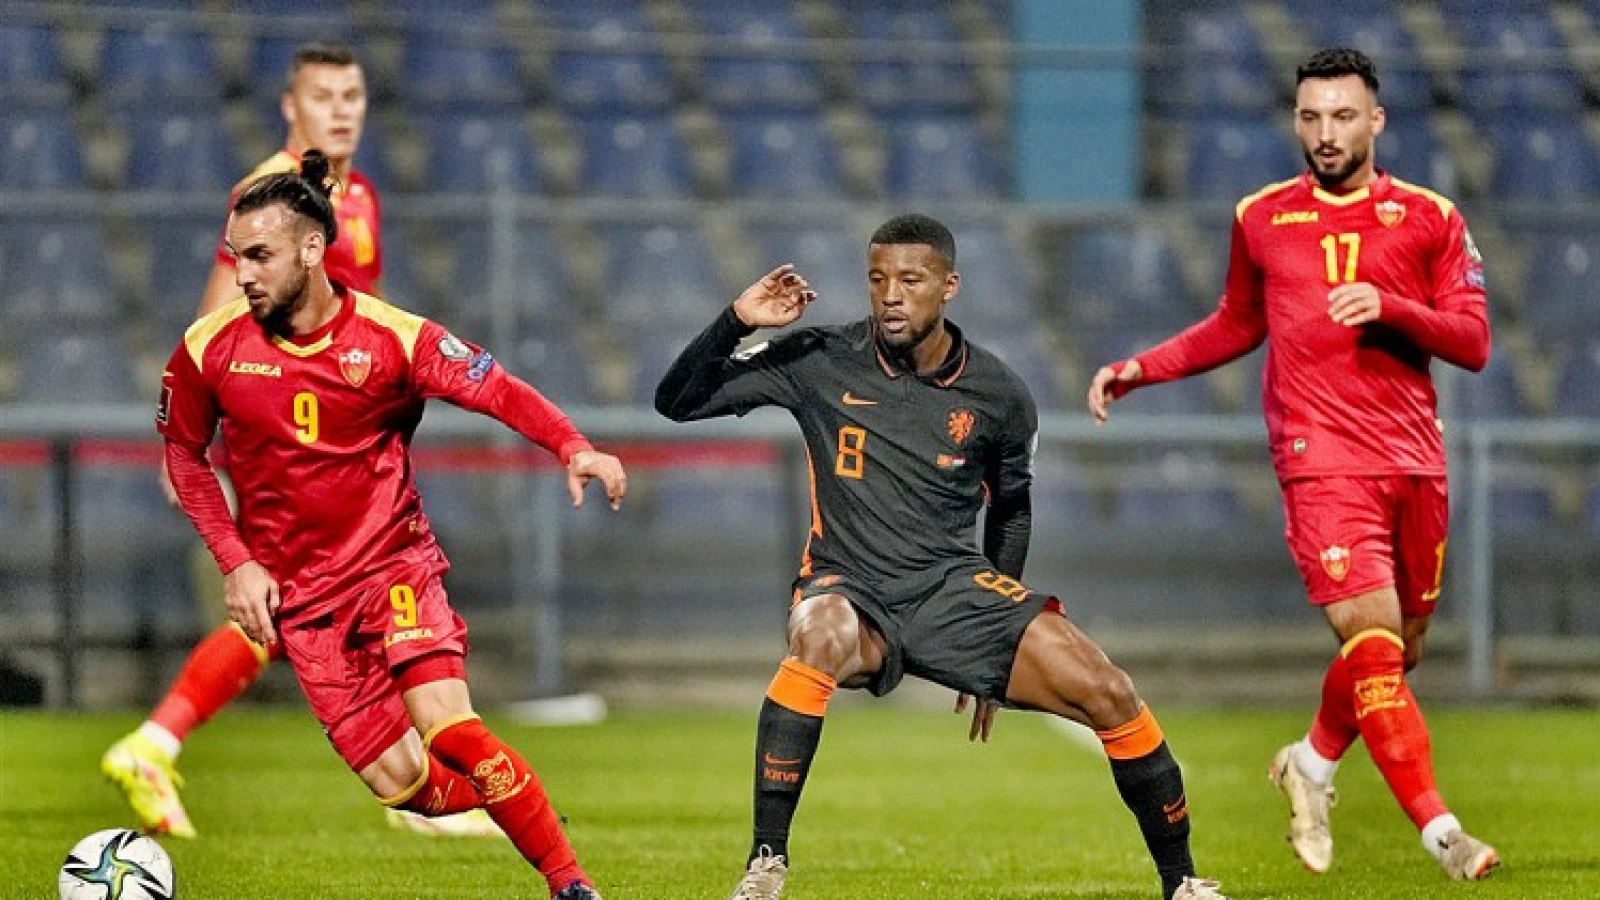 Oranje geeft overwinning uit handen tegen Montenegro en plaatst zich nog niet voor WK